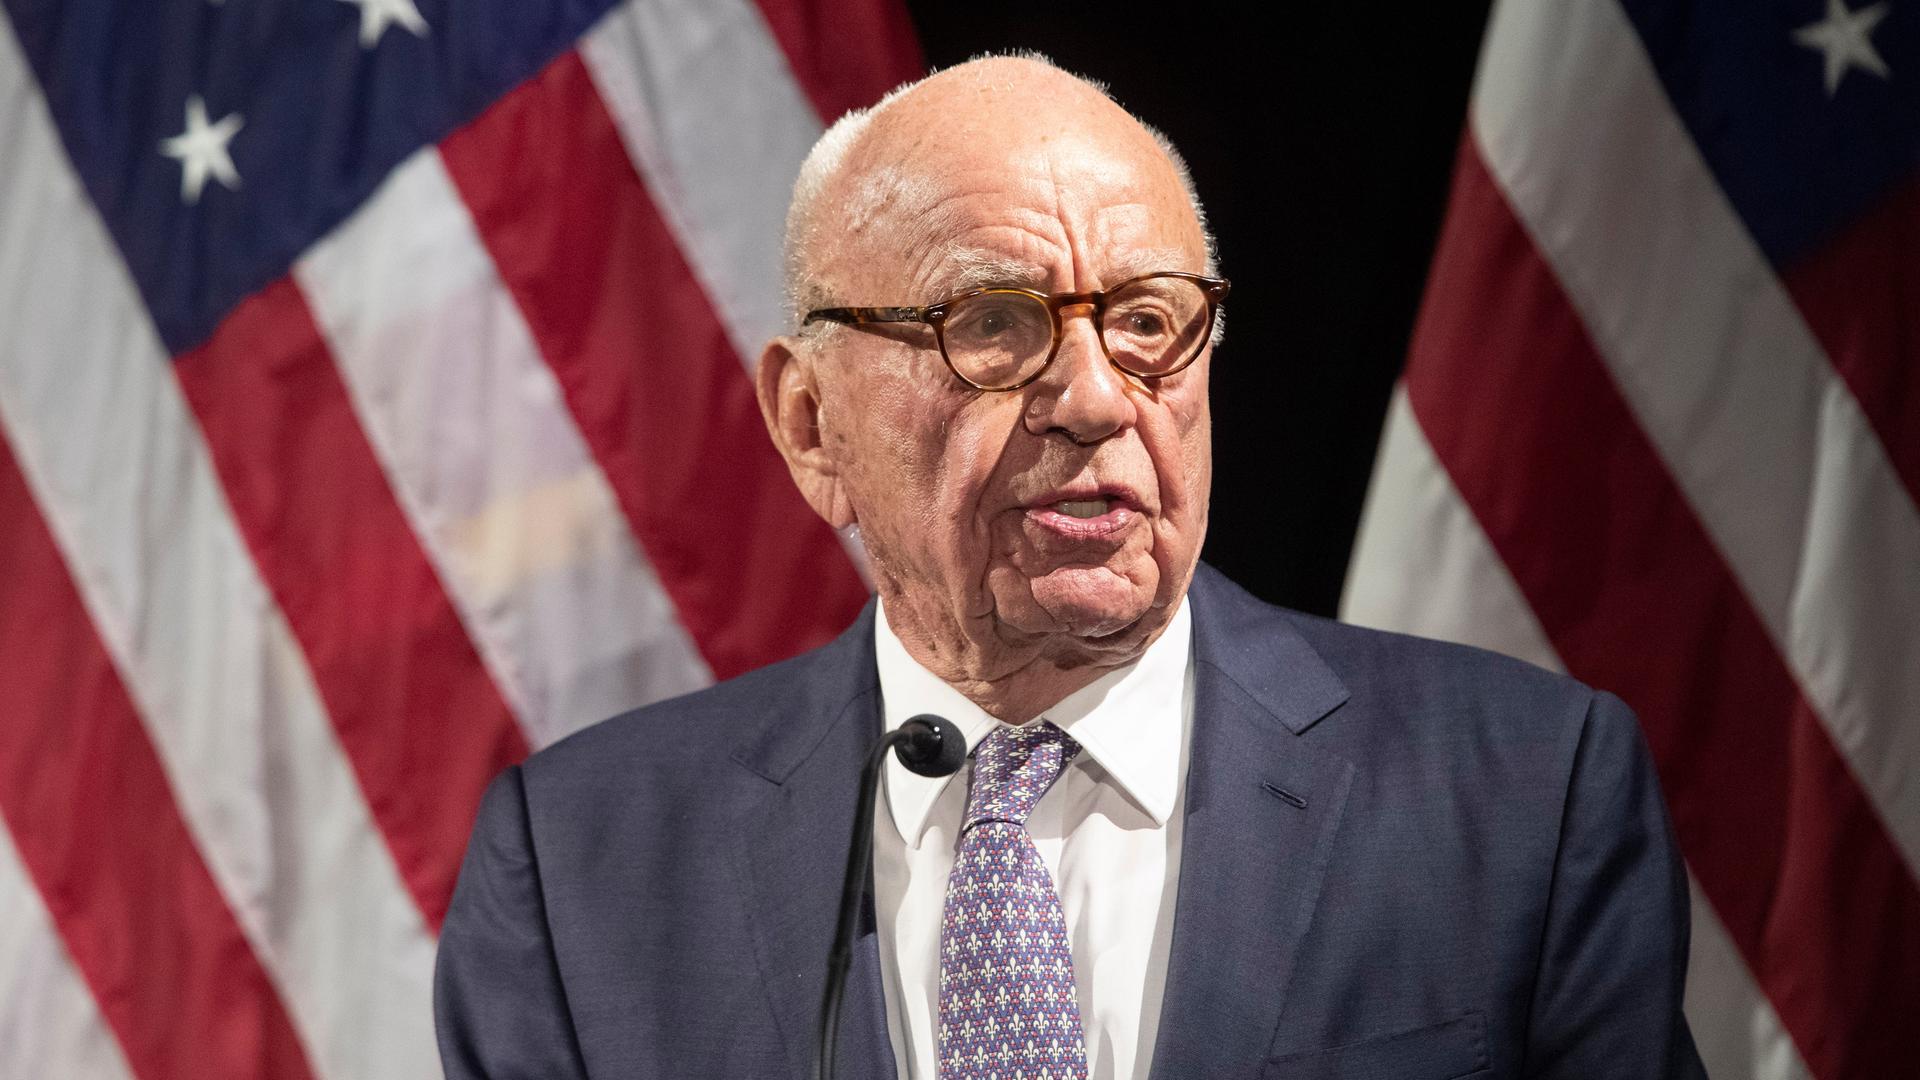 Rupert Murdoch steht am Mikrofon, hinter ihm eine US-amerikanische Flagge.